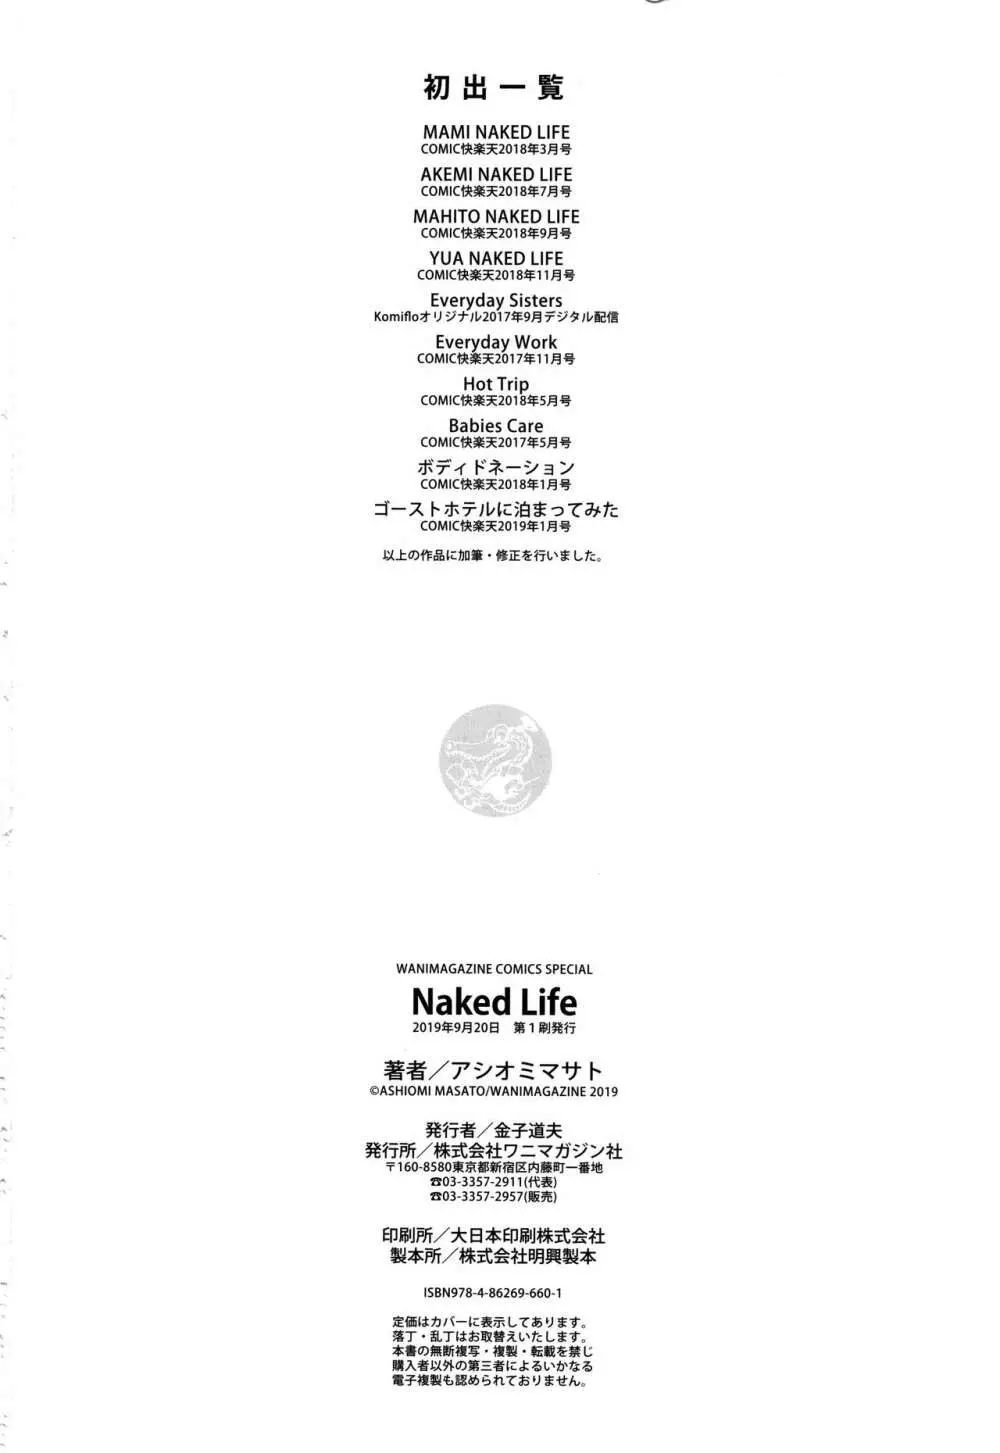 Naked Life + 4Pリーフレット 195ページ